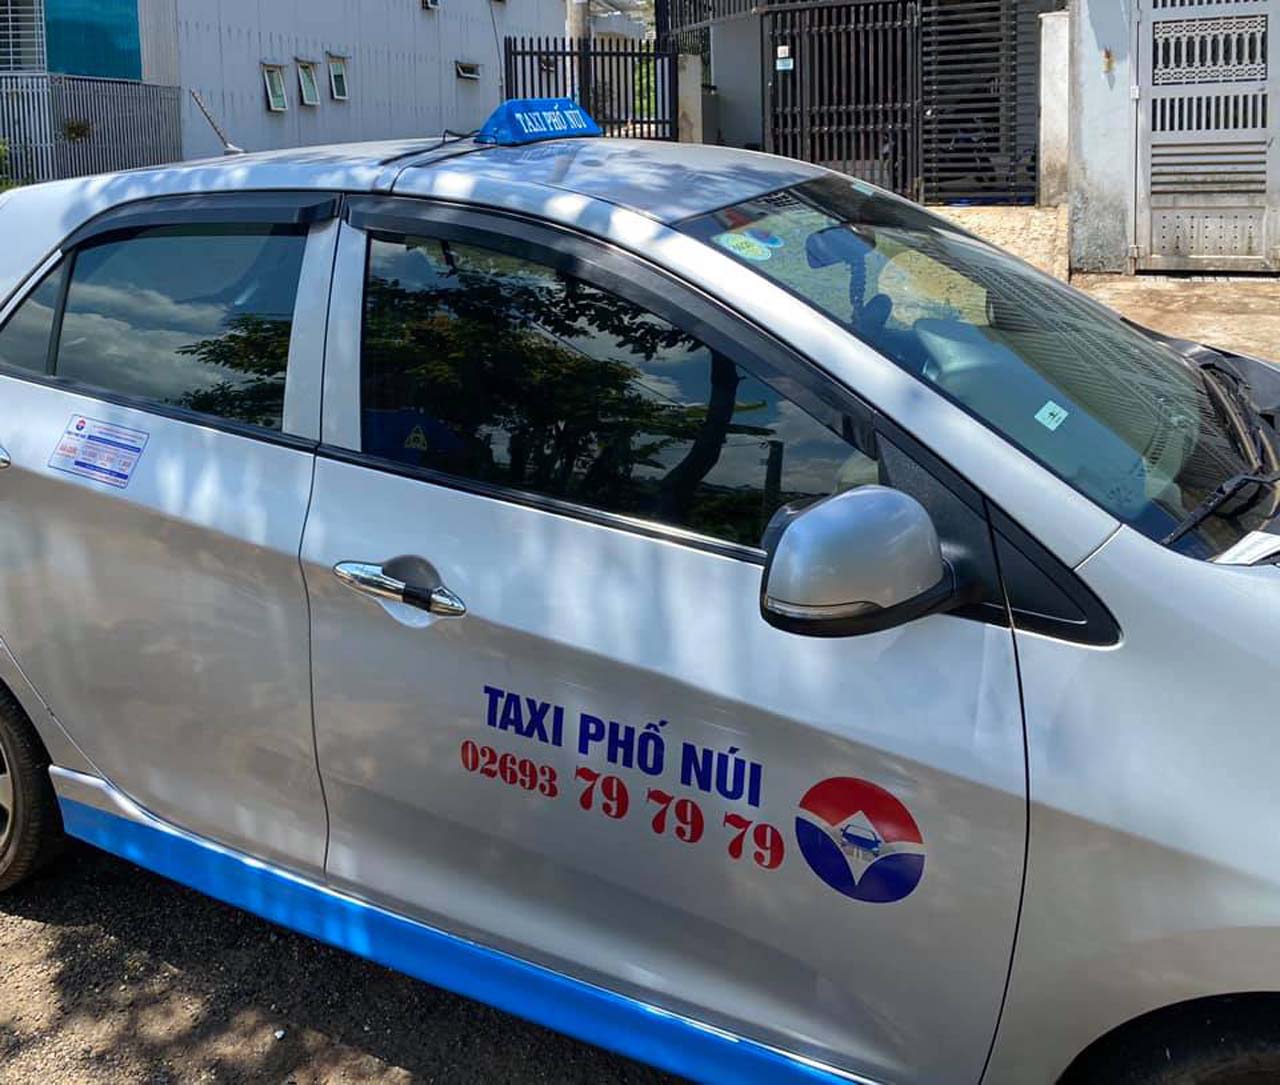 Điện thoại Taxi Phố Núi Gia Lai: 02693797979